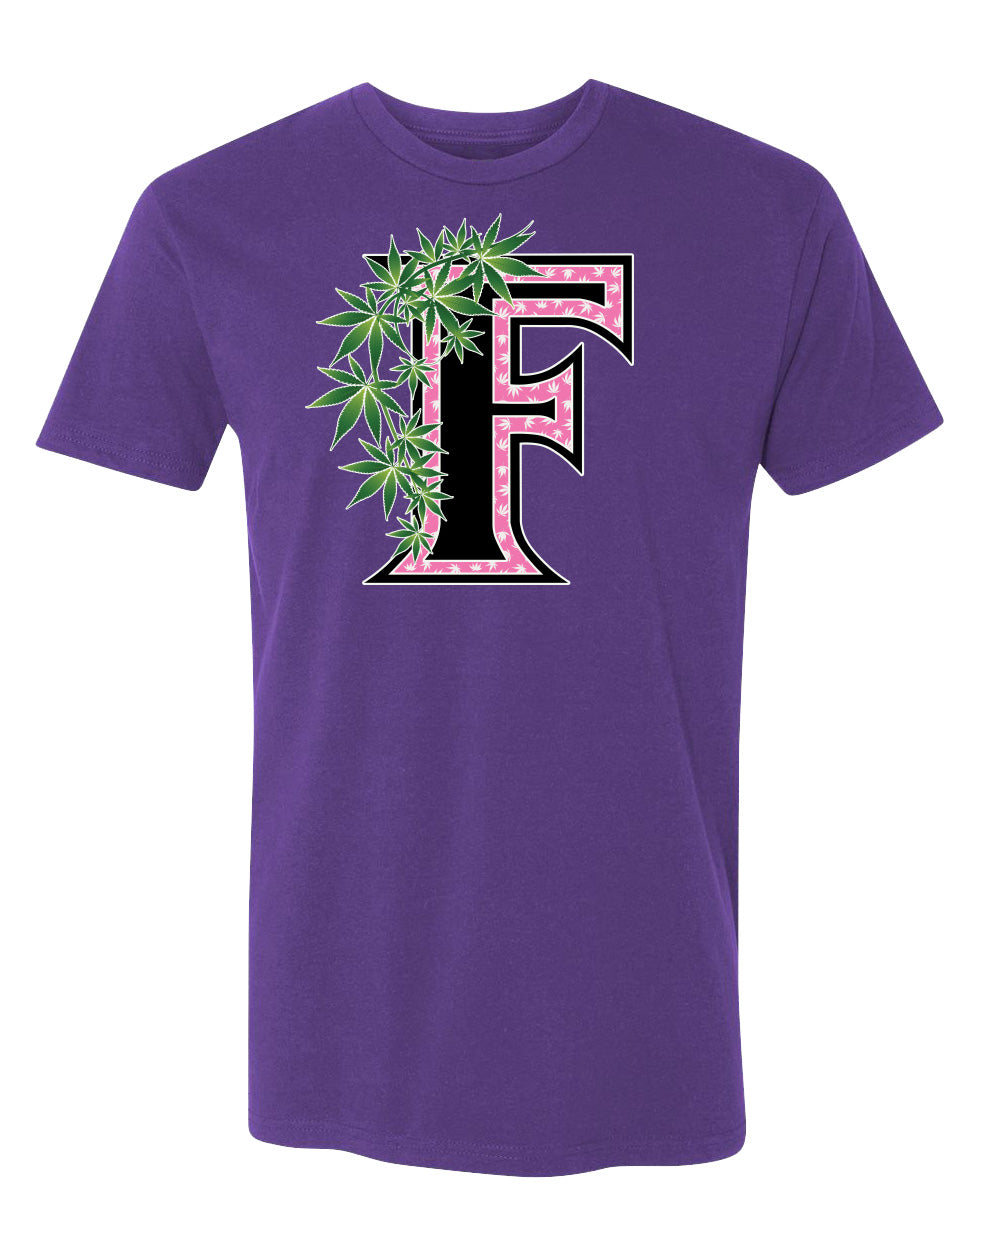 Flee Farms F Pink logo Tshirt